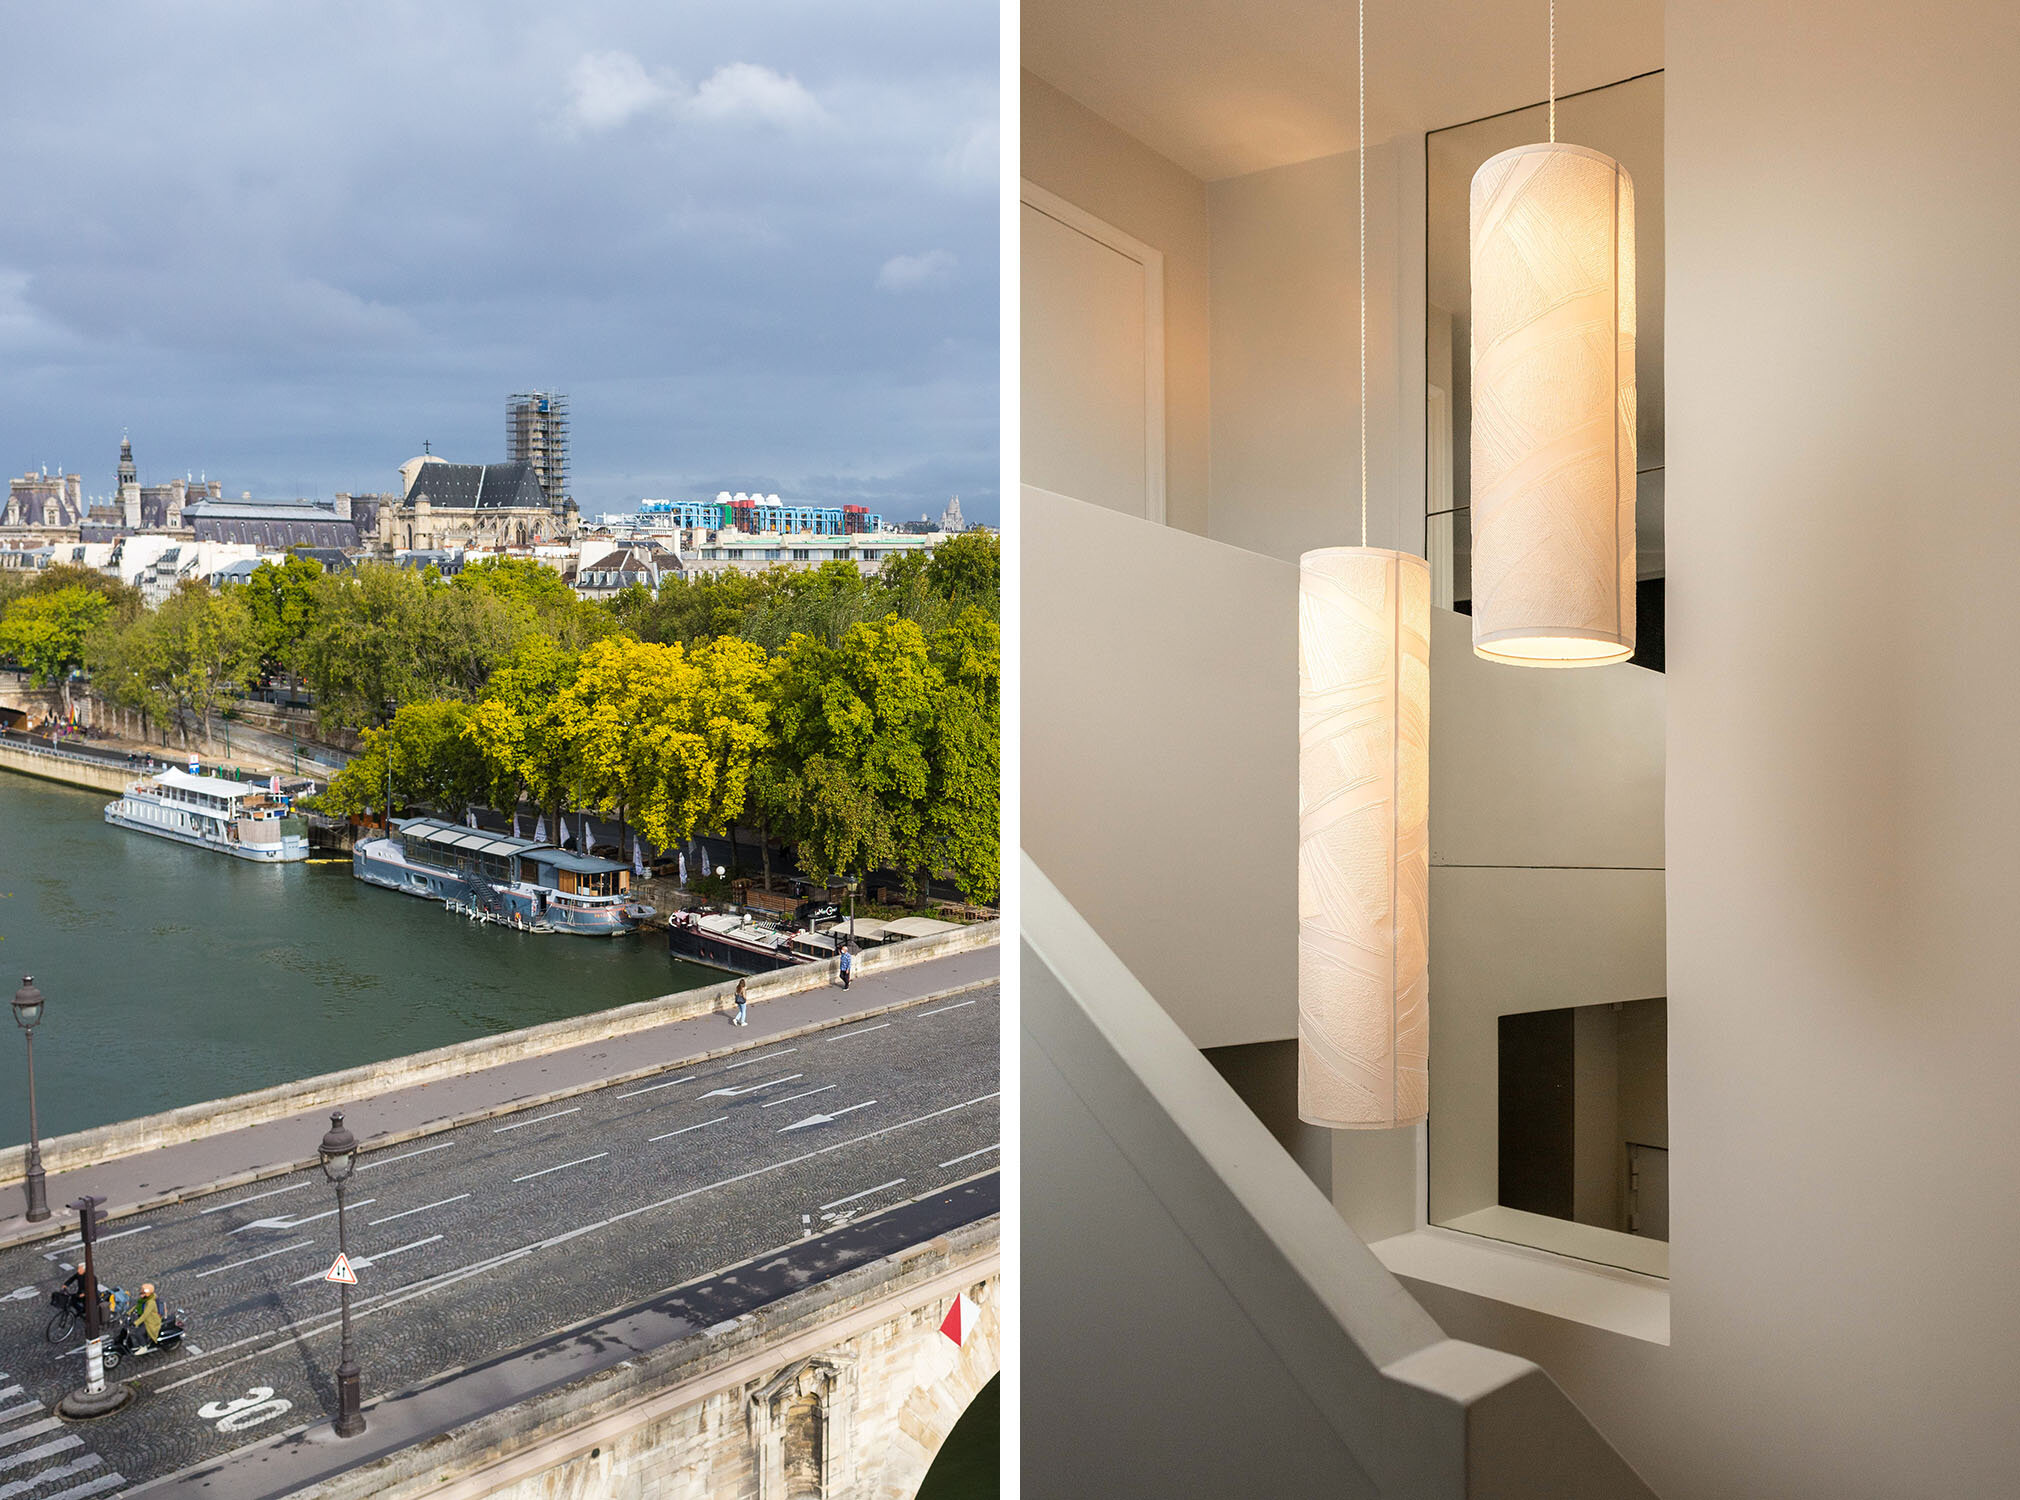  Aménagement d’un appartement quai d’Anjou, Paris  Maîtrise d’œuvre complète | 150 m² | 2020  © Nathalie Baetens 